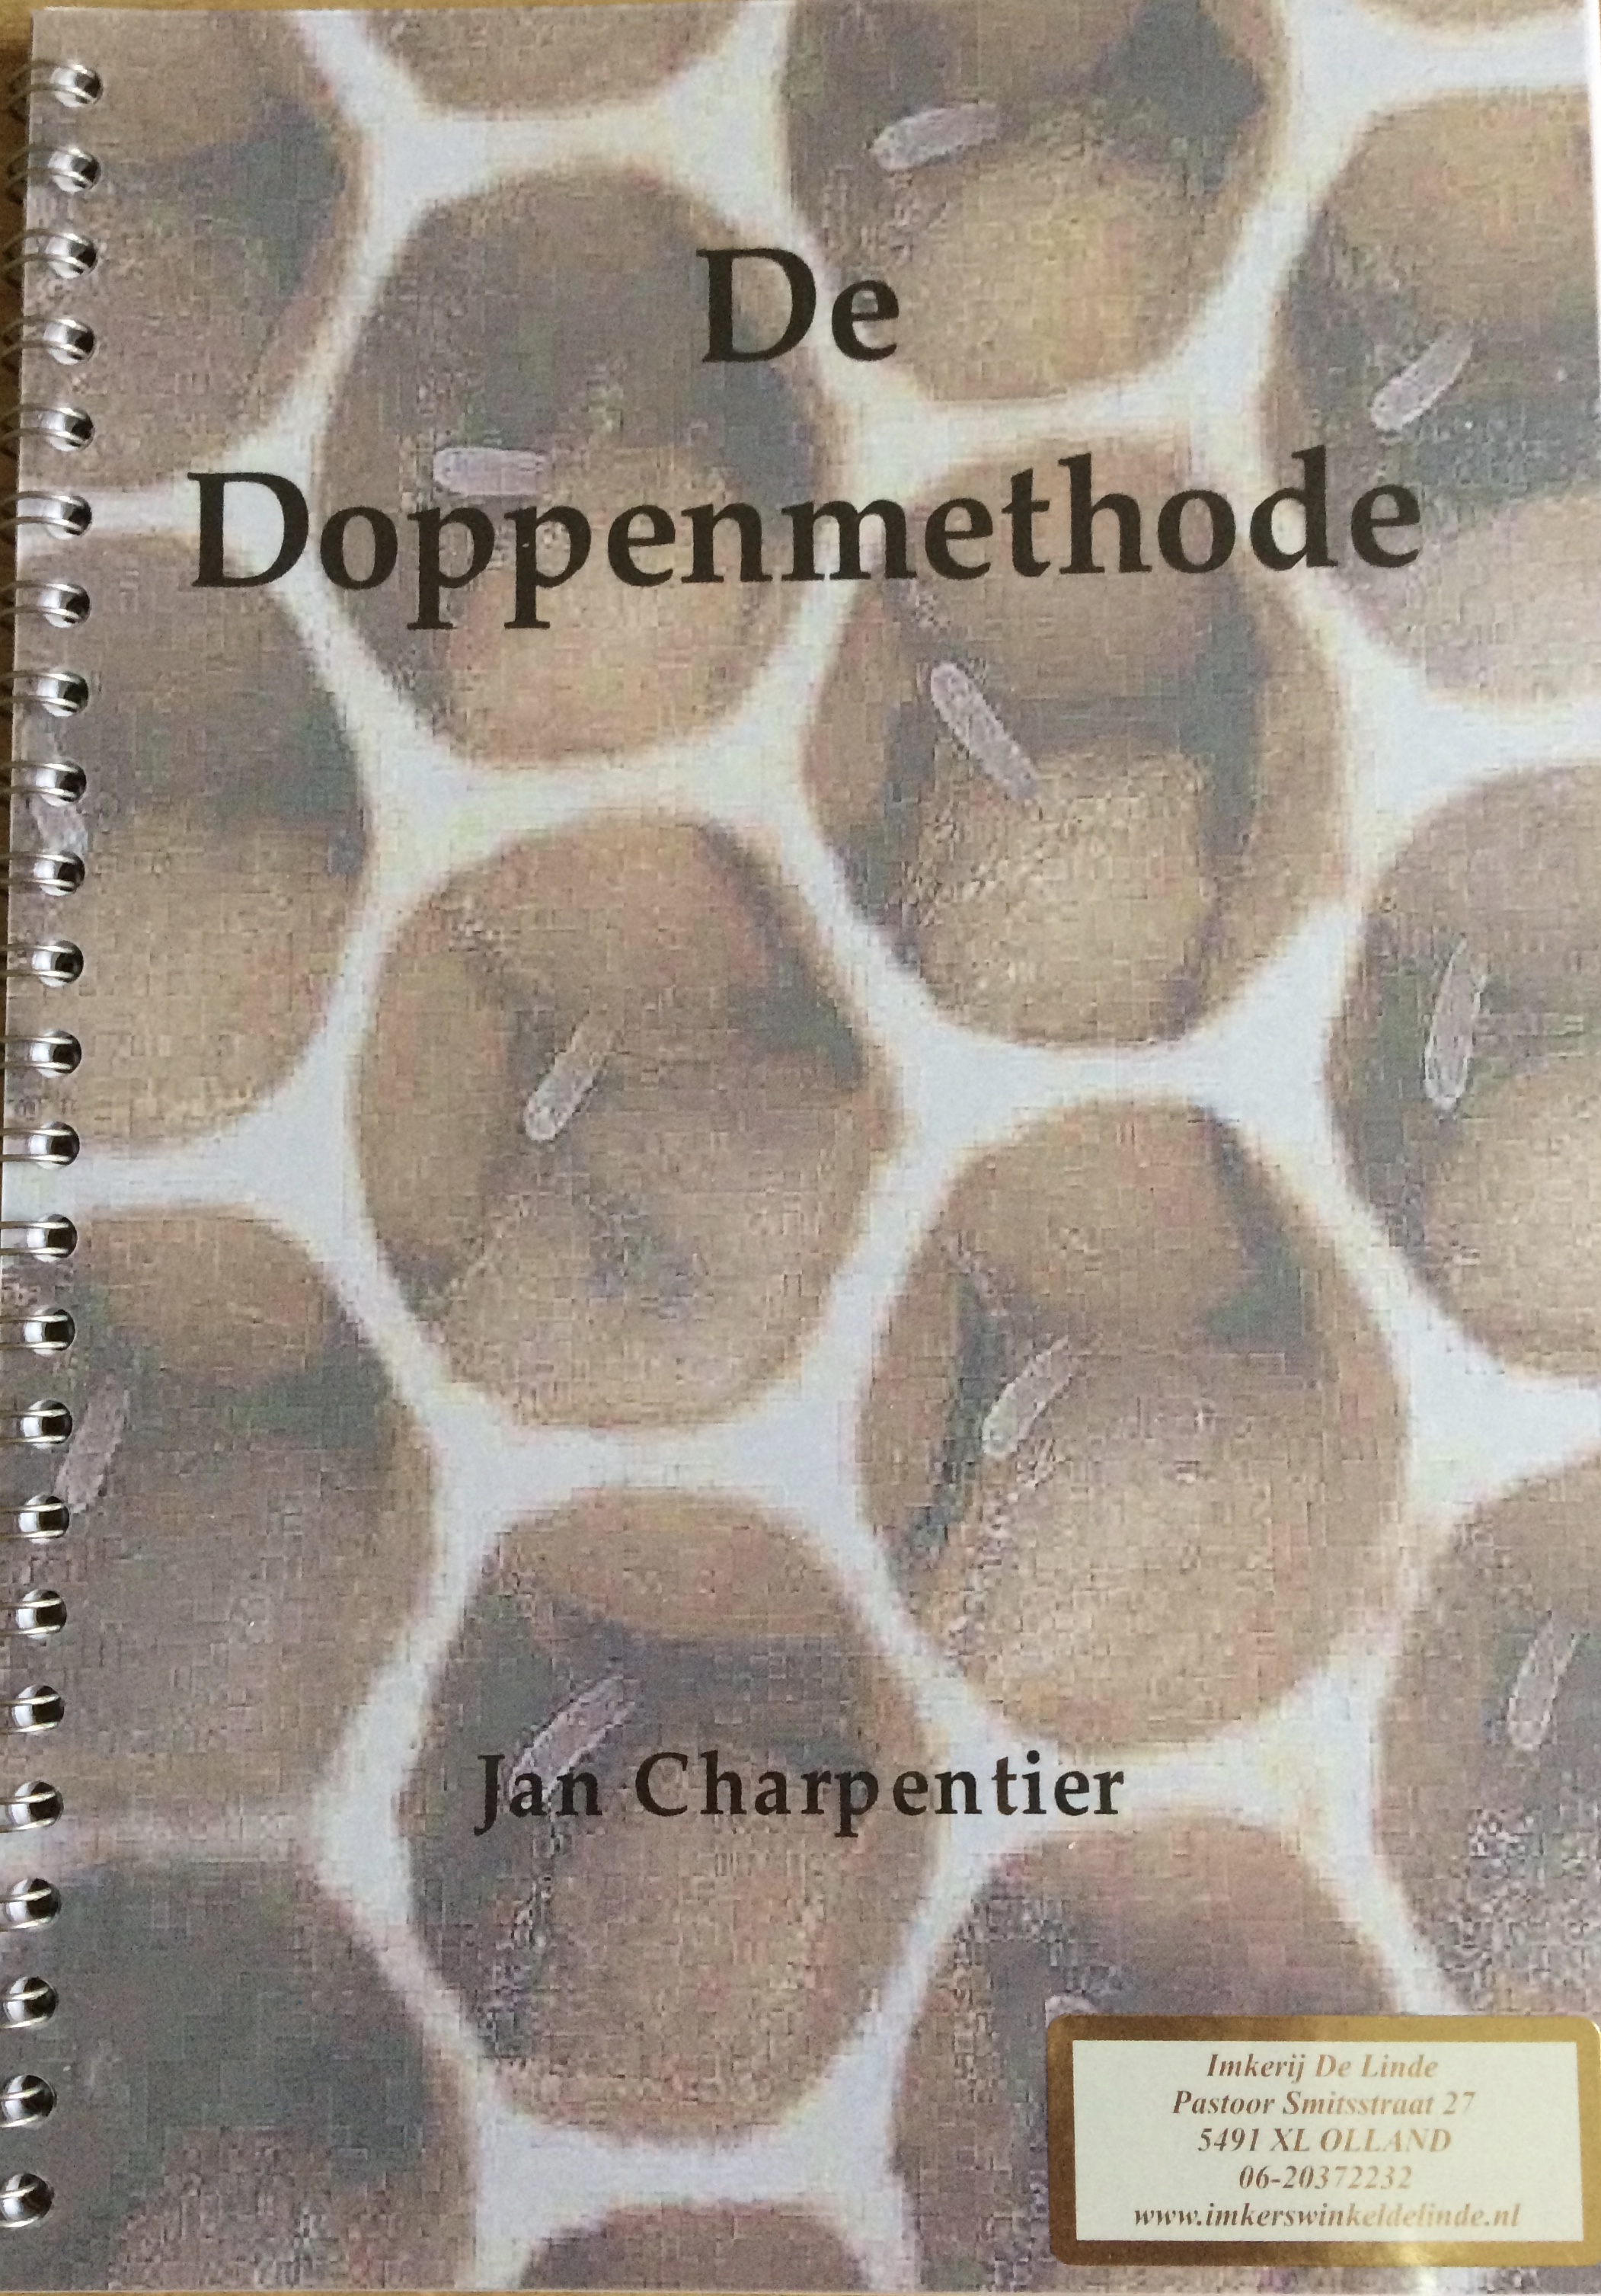 De Doppenmethode van Jan Charpentier kopen bij Imkerij De Linde